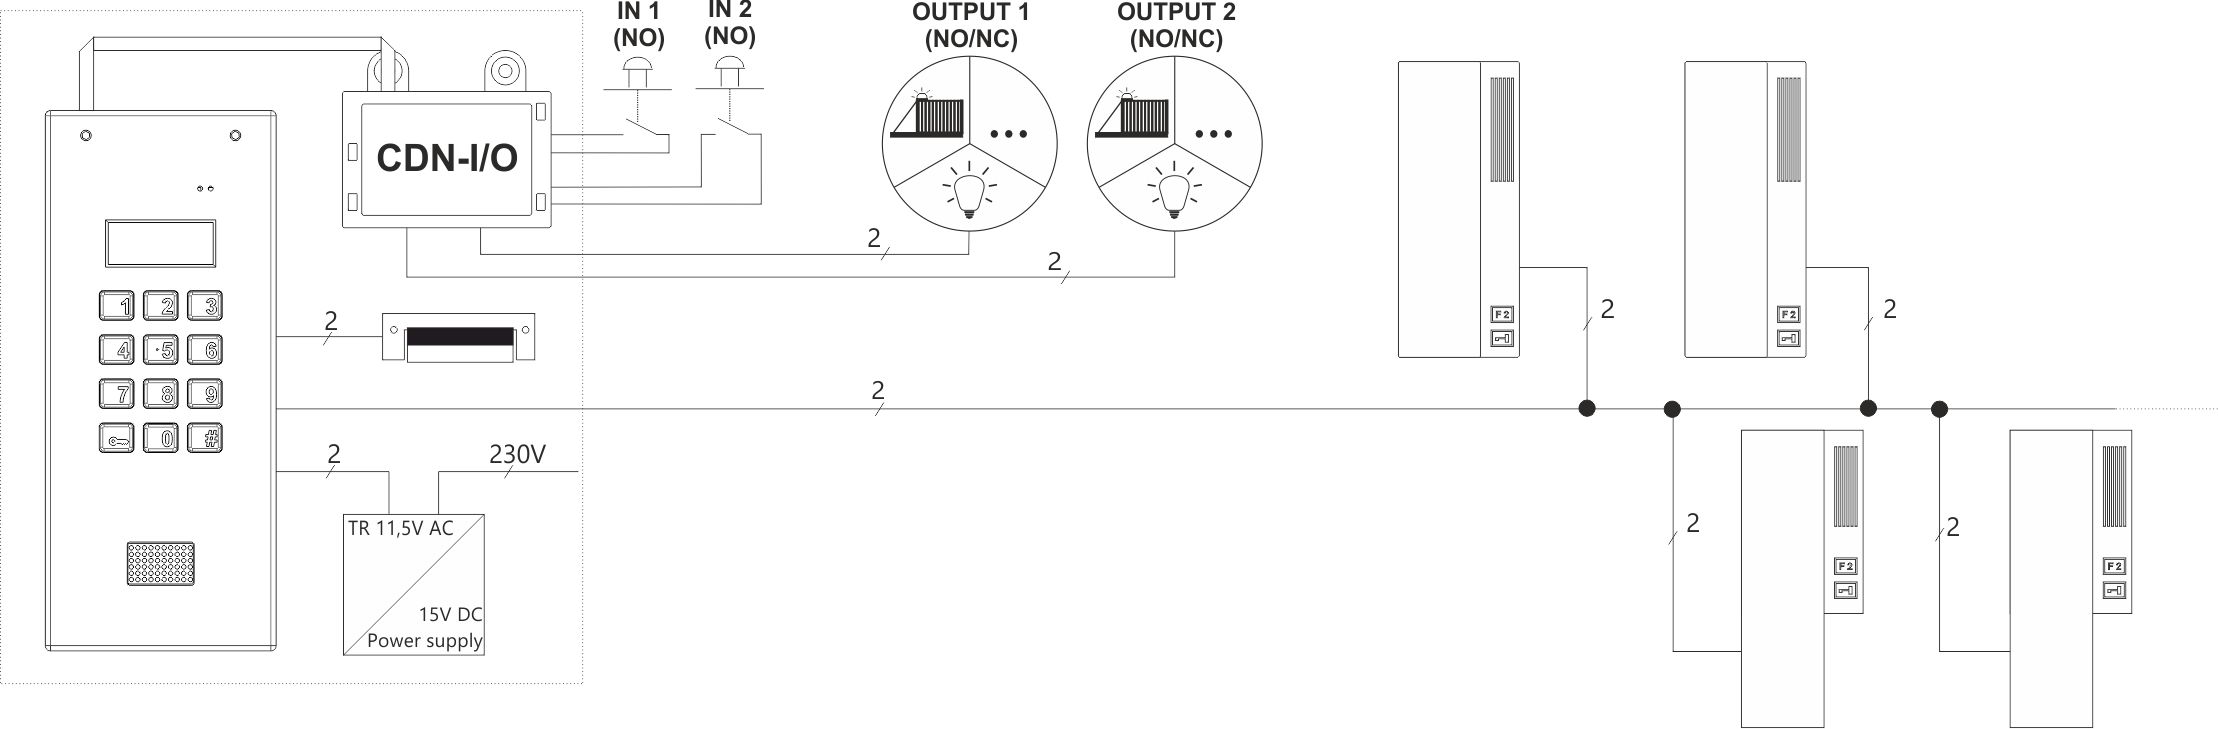 CDN-I/O Sterowanie automatyką domową i urządzeniami zewnętrznymi - Schemat